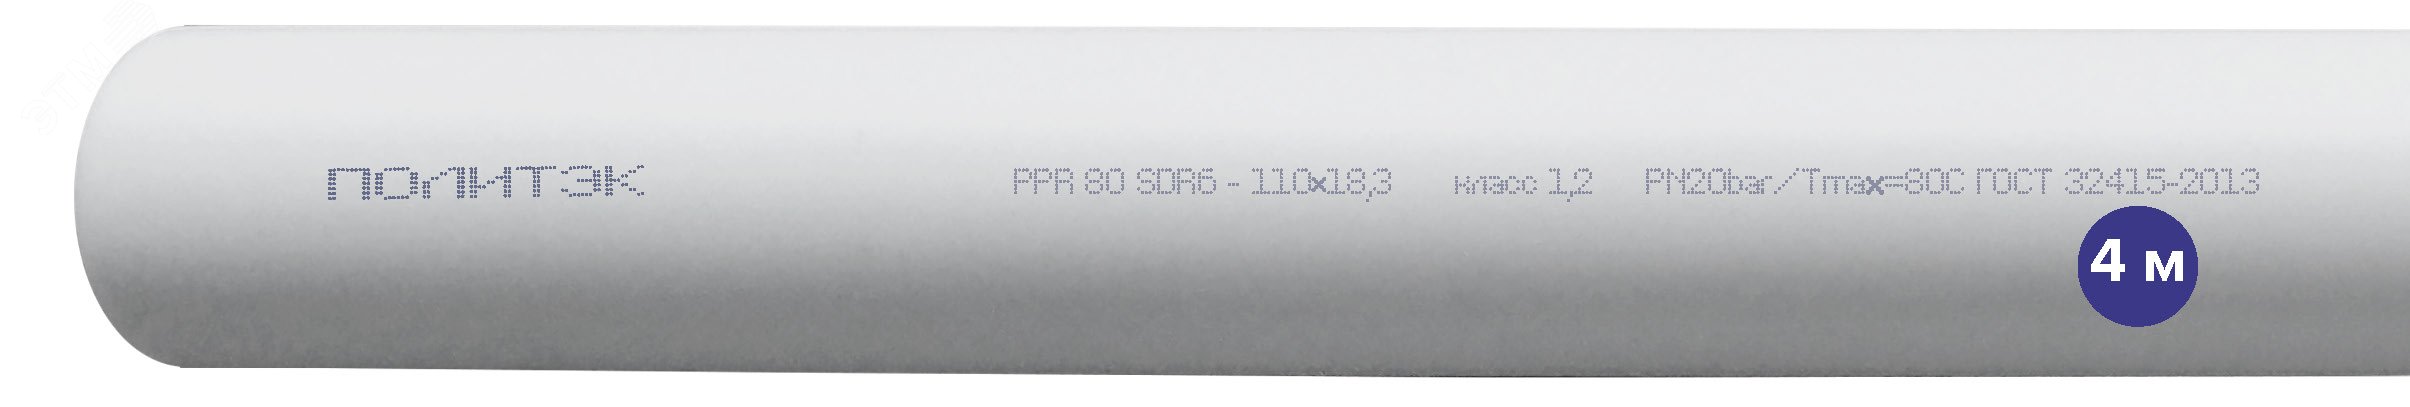 Труба полипропиленовая 110 х 18.3 SDR 6 PN 20 PPR белая, хлыст 4м 90002110183 Политэк - превью 2